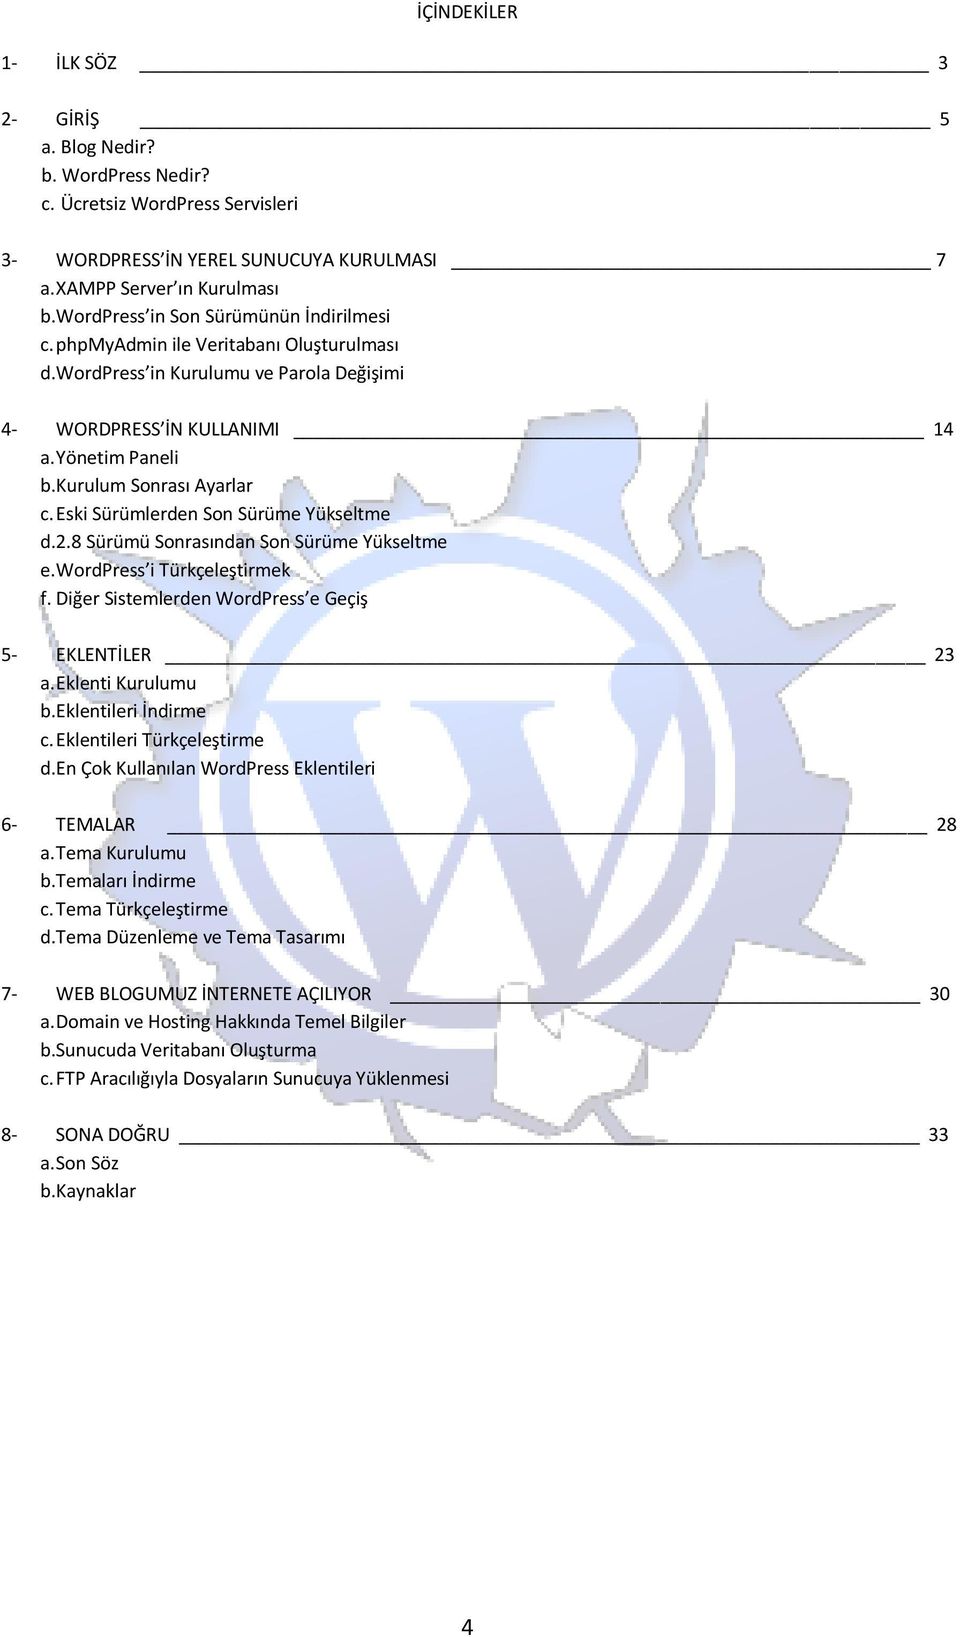 Eski Sürümlerden Son Sürüme Yükseltme d.2.8 Sürümü Sonrasından Son Sürüme Yükseltme e. WordPress i Türkçeleştirmek f. Diğer Sistemlerden WordPress e Geçiş 5- EKLENTİLER 23 a. Eklenti Kurulumu b.